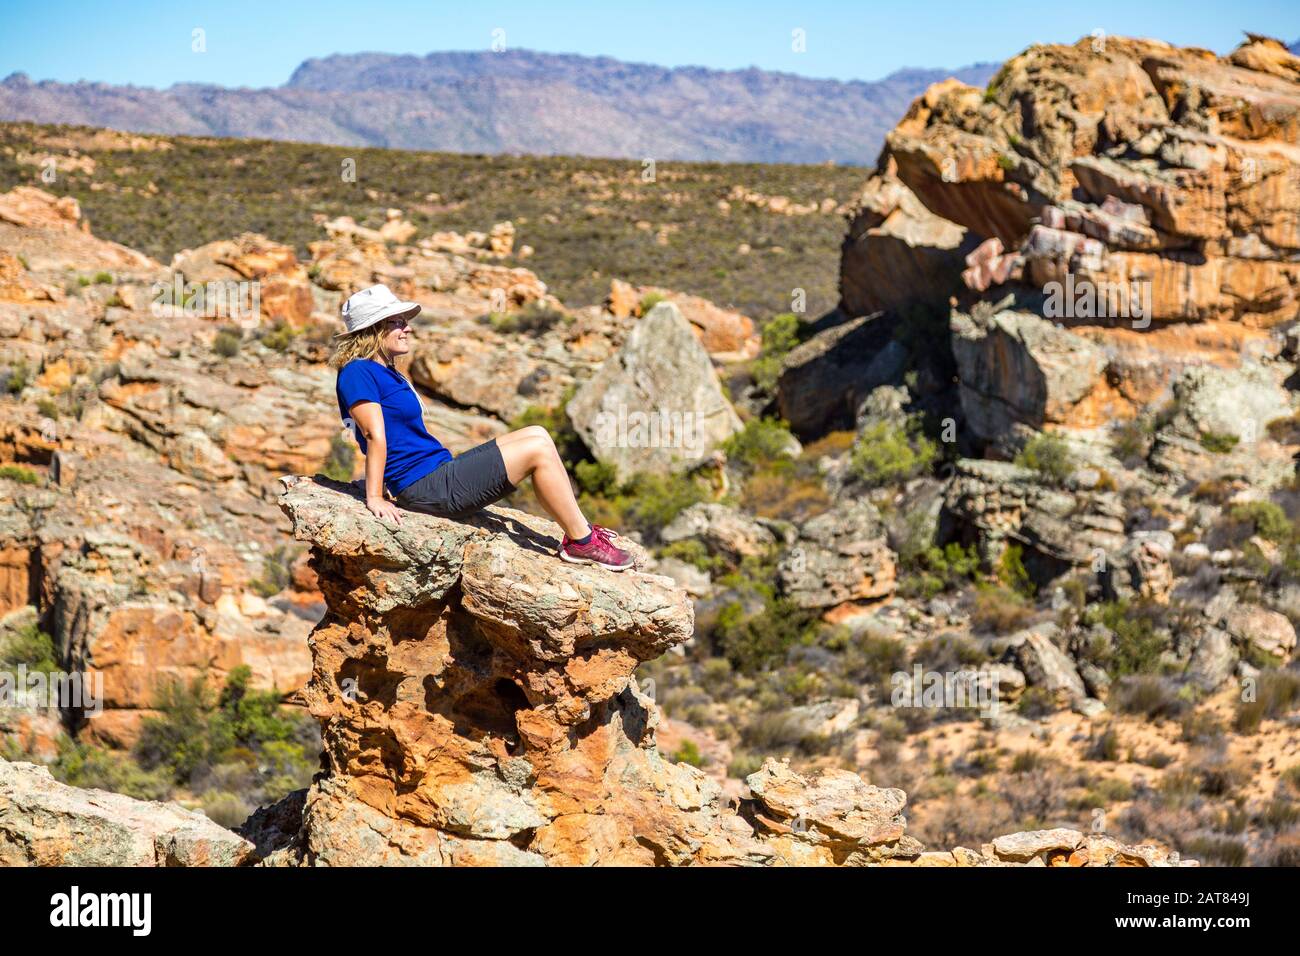 Jeune femme assise sur un rocher exposé et profitant de la vue sur un paysage bizarre, Stadsaal, Cederberg Wilderness Area, Afrique du Sud Banque D'Images